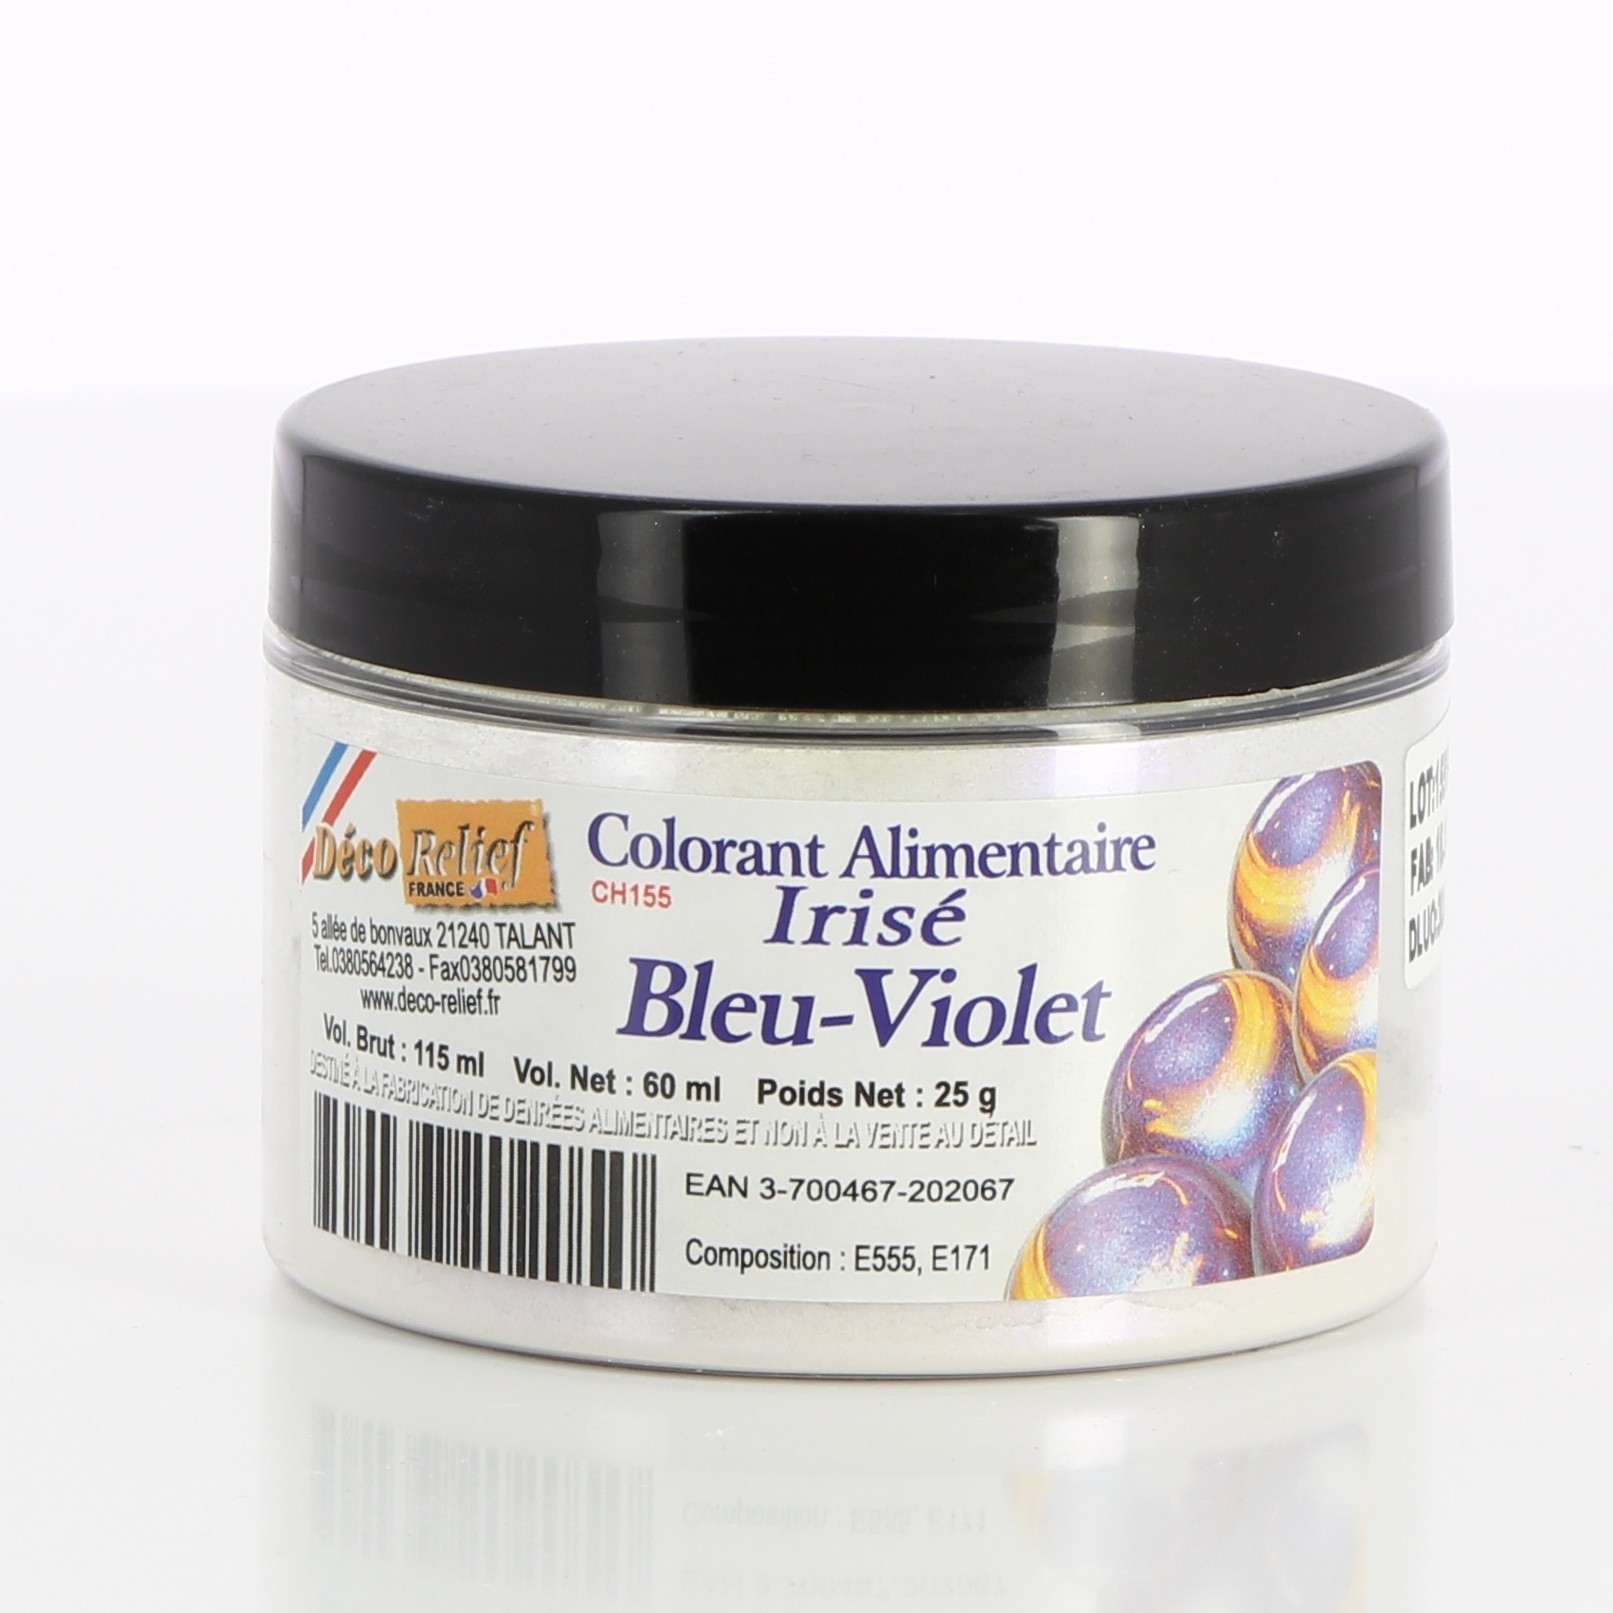 Colorant irisé bleu-violet (poudre alimentaire) 25 g - Deco Relief